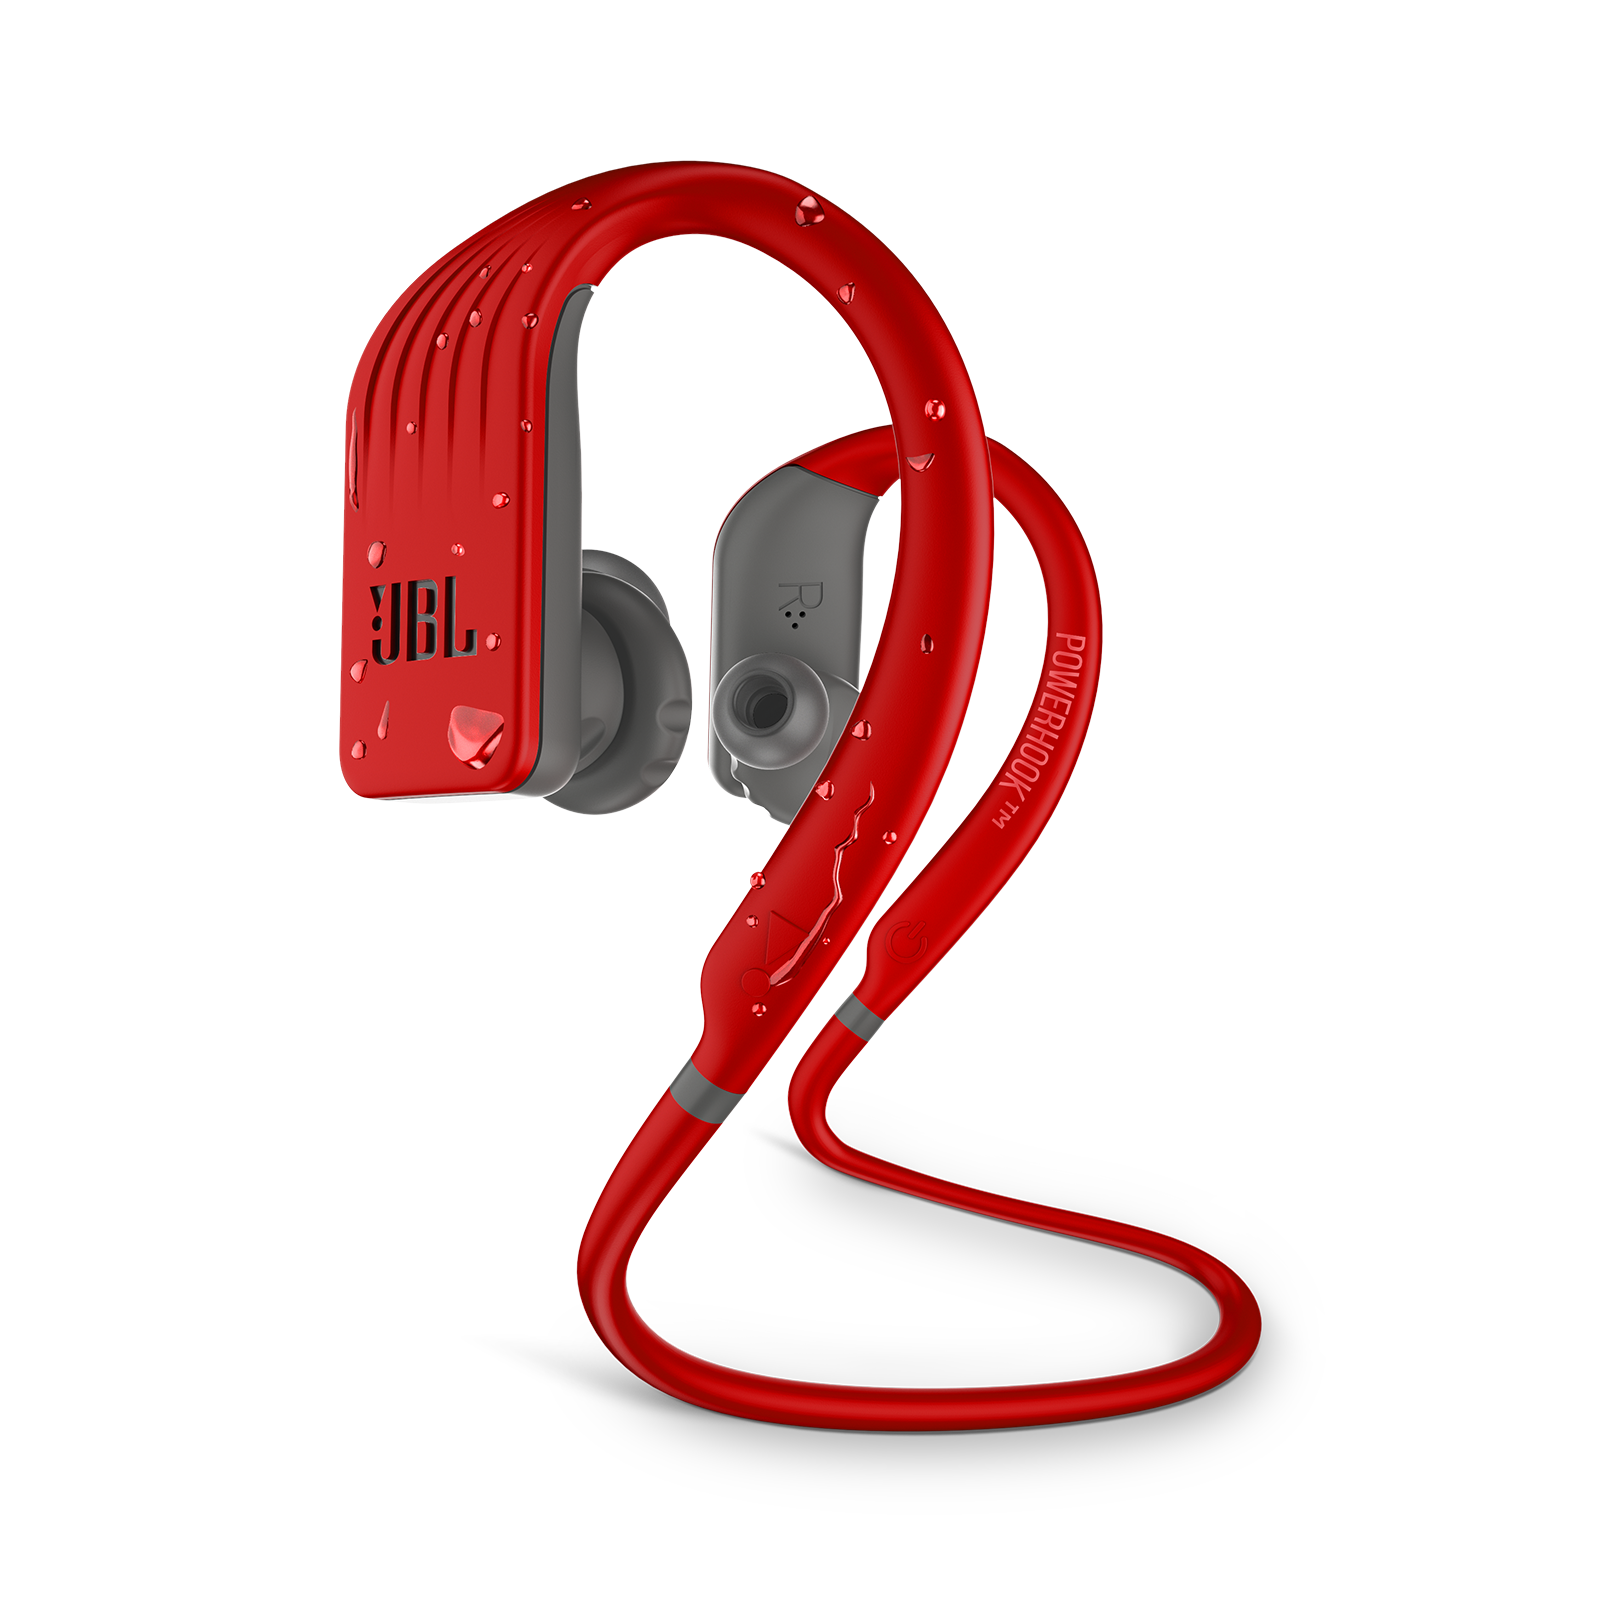 JBL Endurance JUMP - Red - Waterproof Wireless Sport In-Ear Headphones - Hero